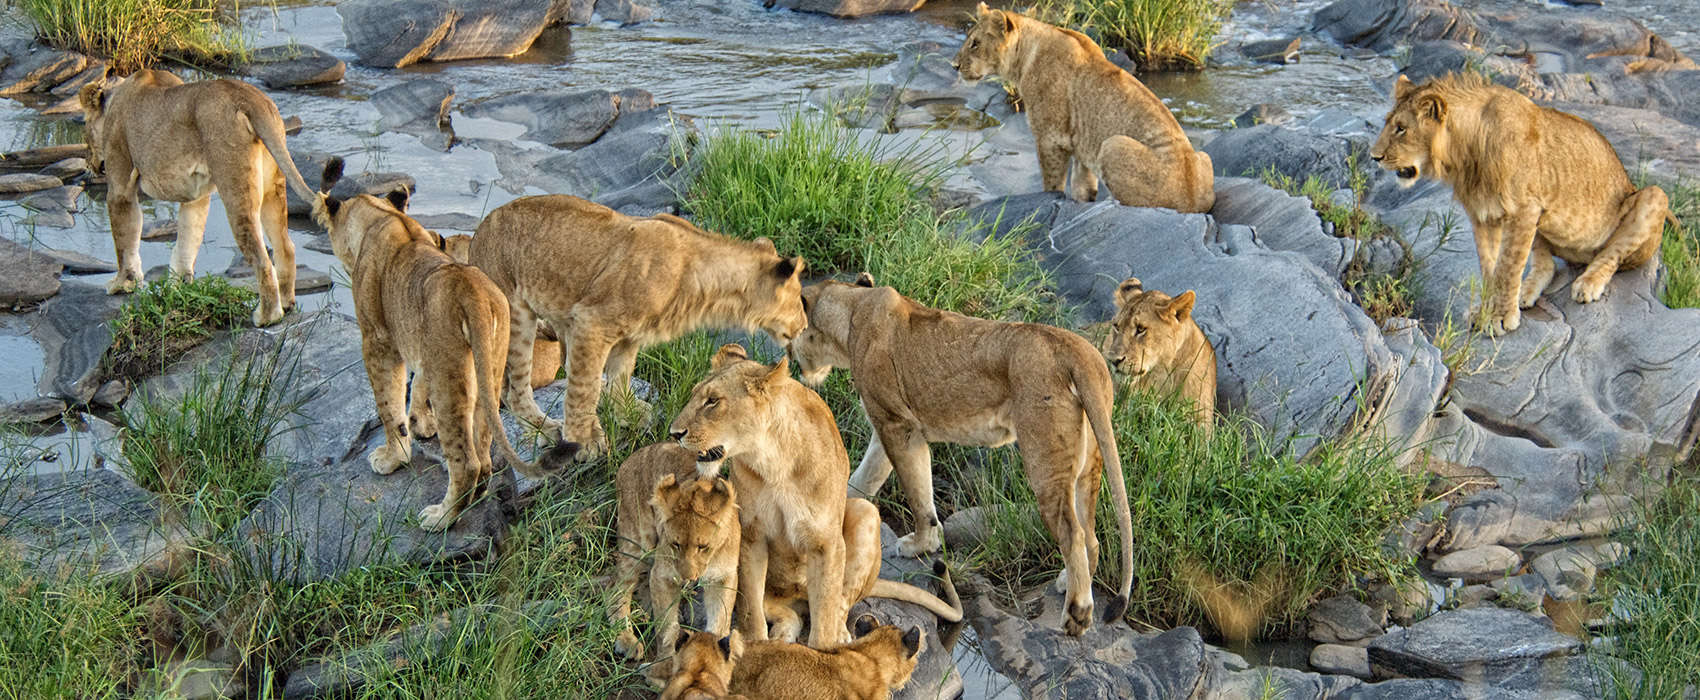 African Masai Mara Safari lions